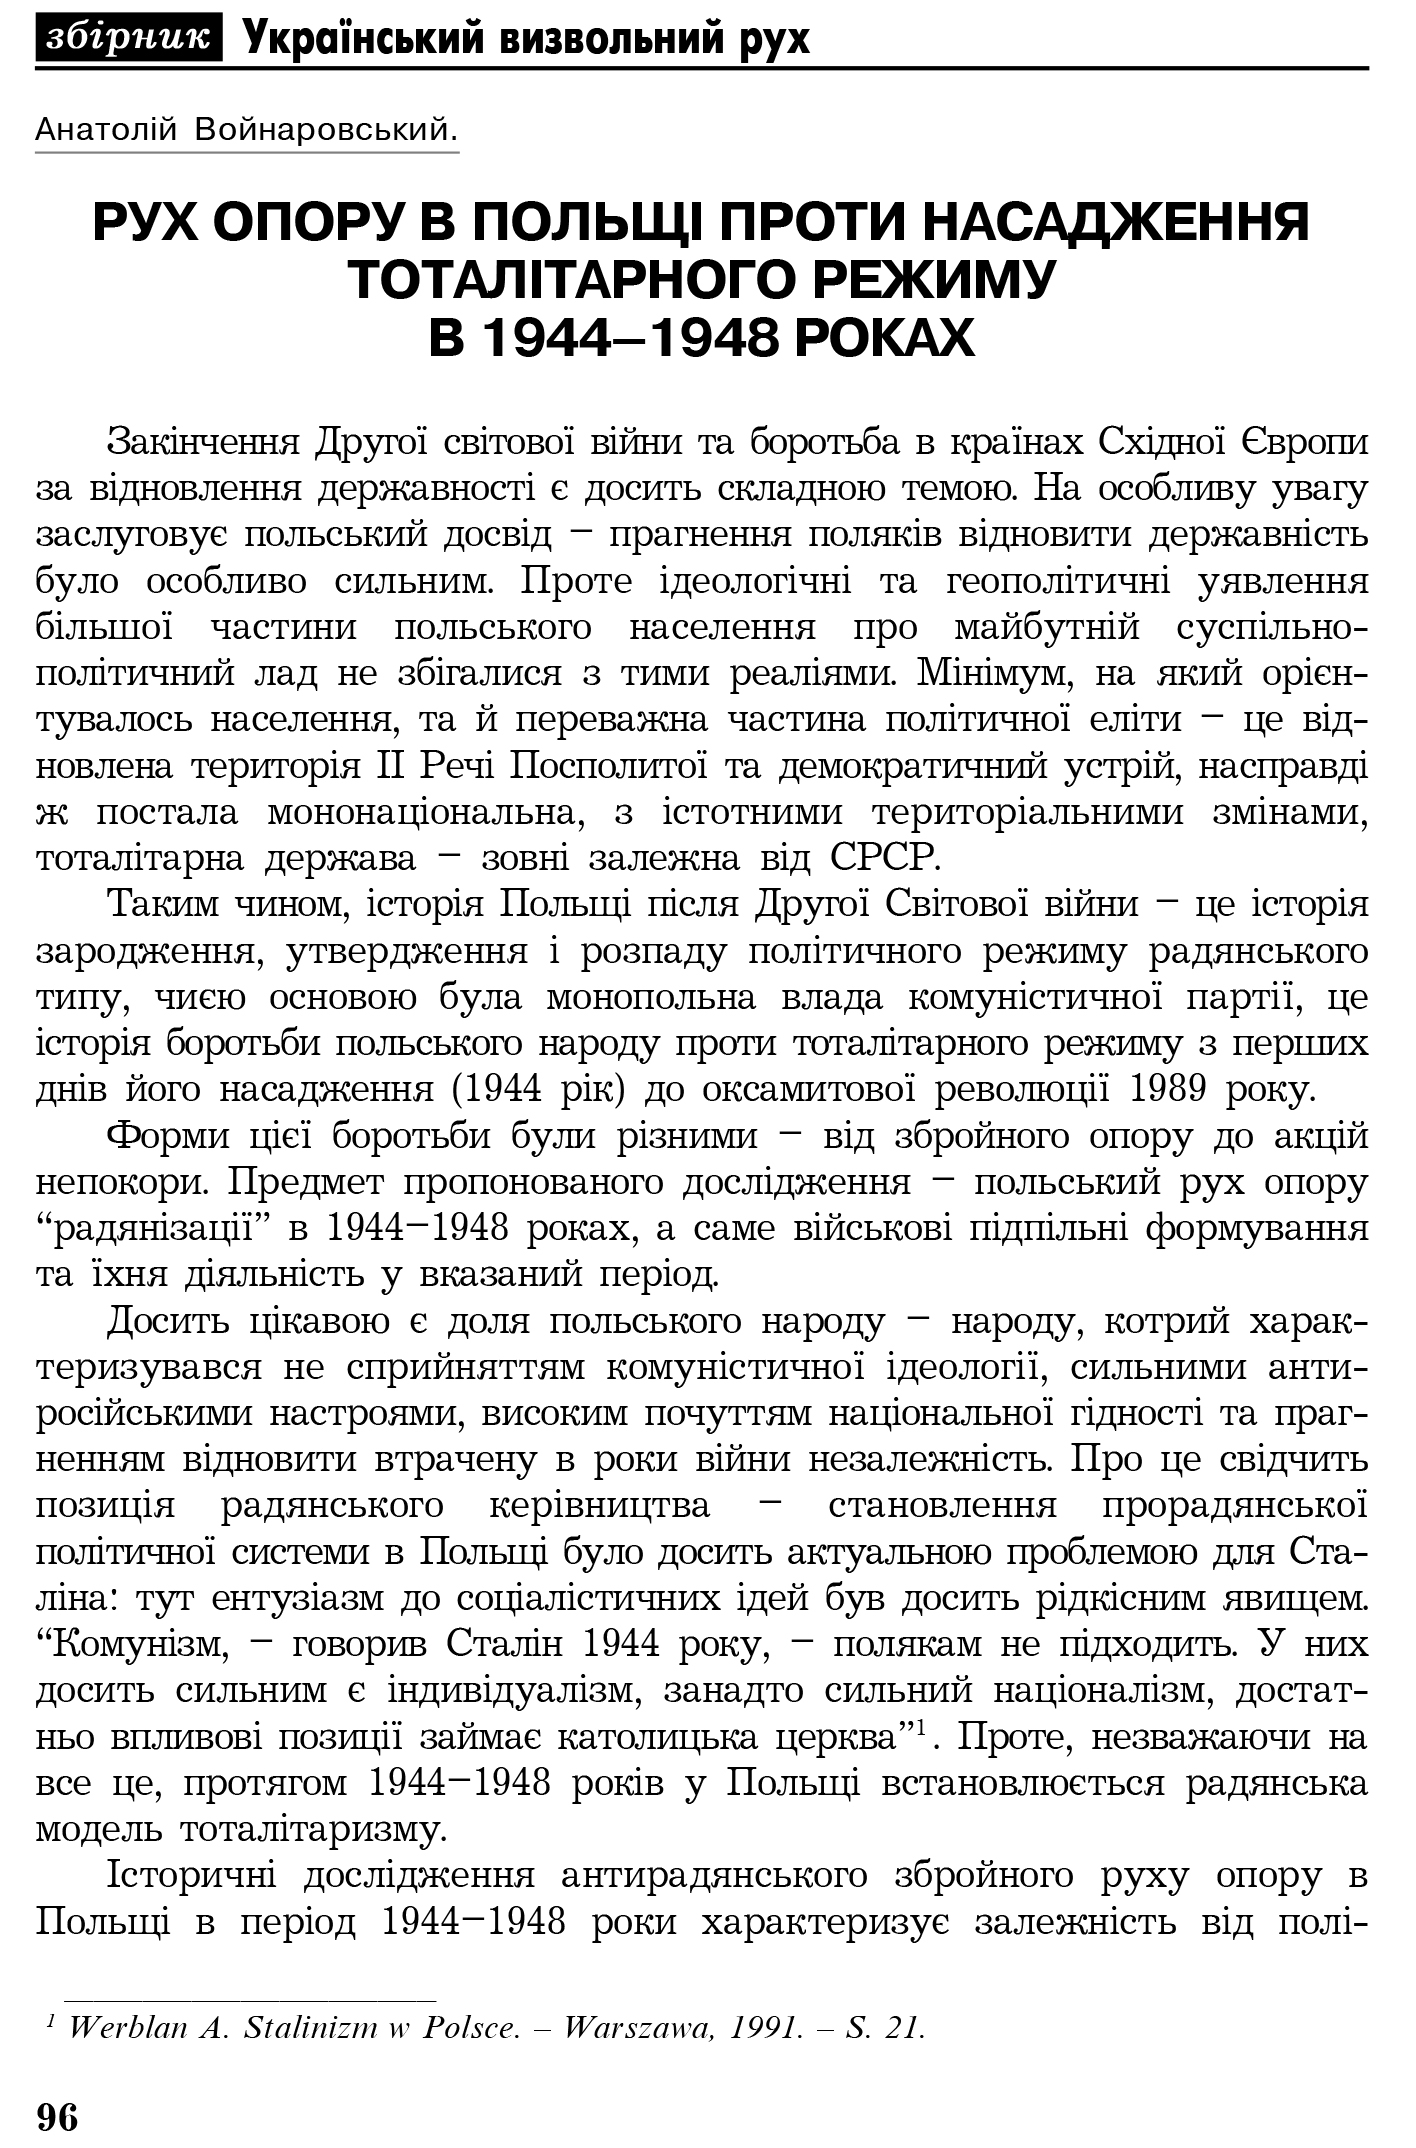 Український визвольний рух №4, ст. 96 - 106